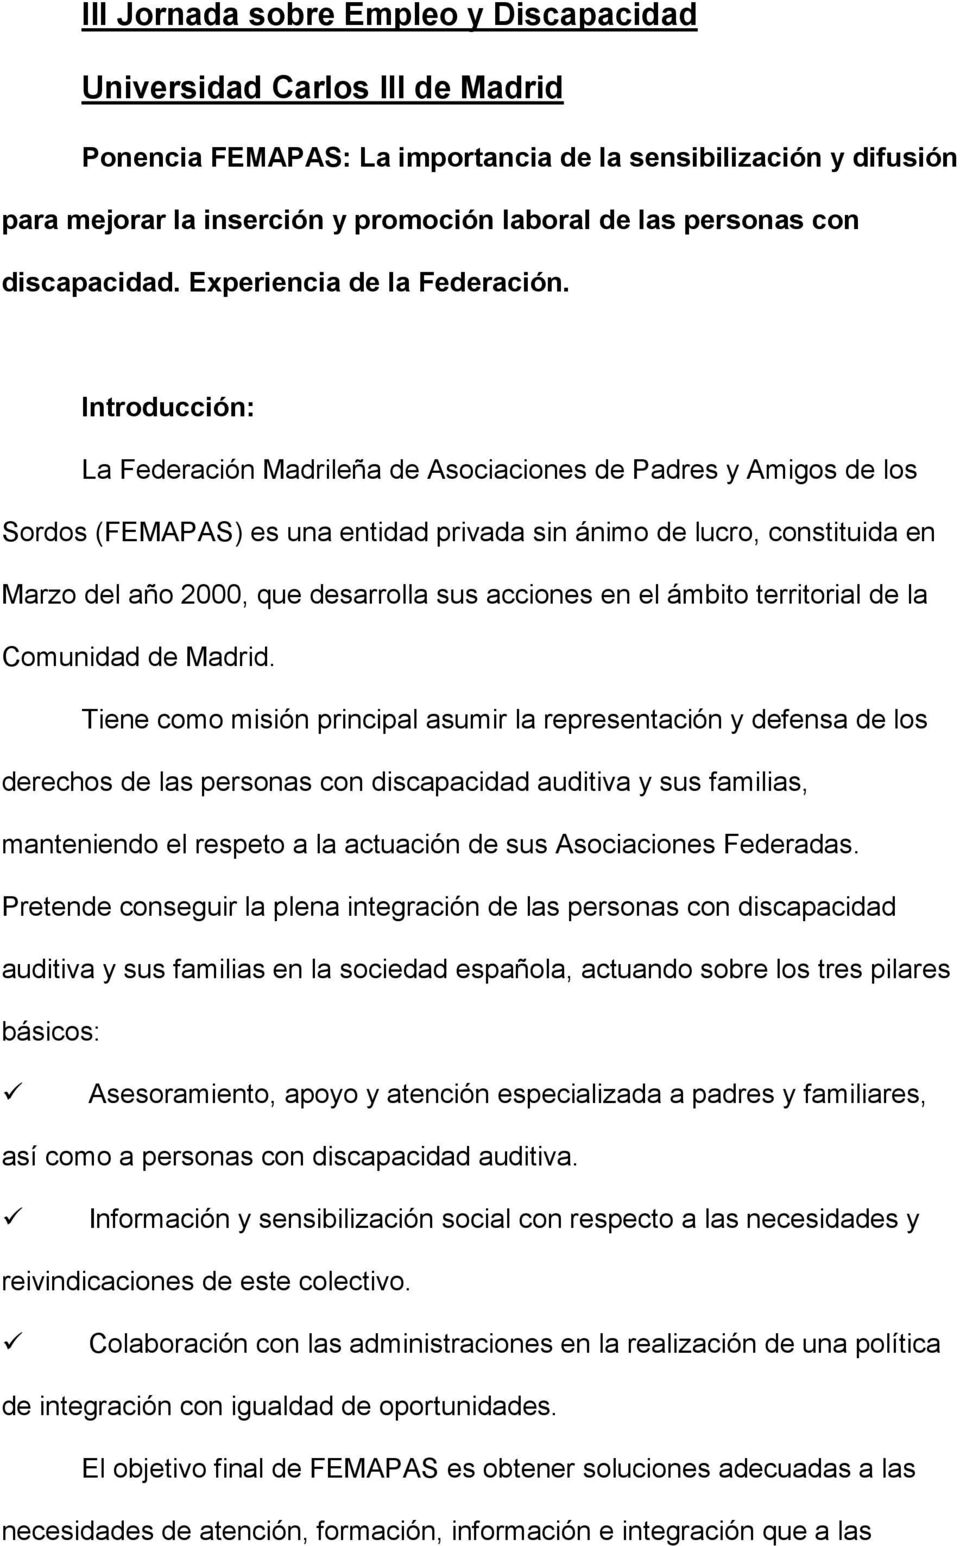 Introducción: La Federación Madrileña de Asociaciones de Padres y Amigos de los Sordos (FEMAPAS) es una entidad privada sin ánimo de lucro, constituida en Marzo del año 2000, que desarrolla sus